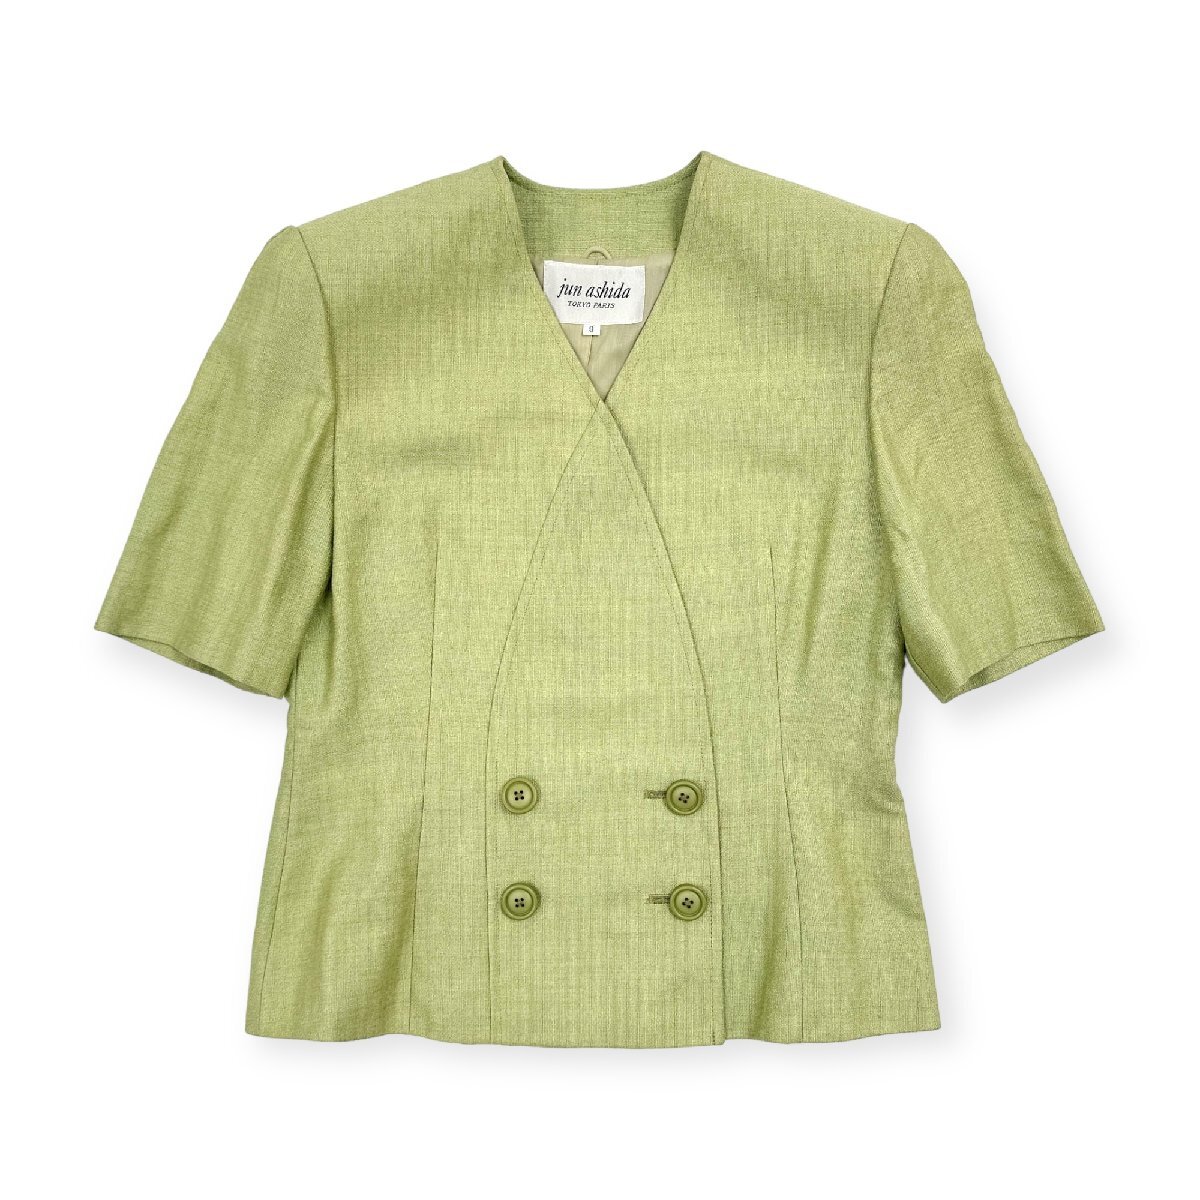 jun ashida ジュンアシダ ノーカラー 半袖 ジャケット サイズ 9 /黄緑 レディース_画像1